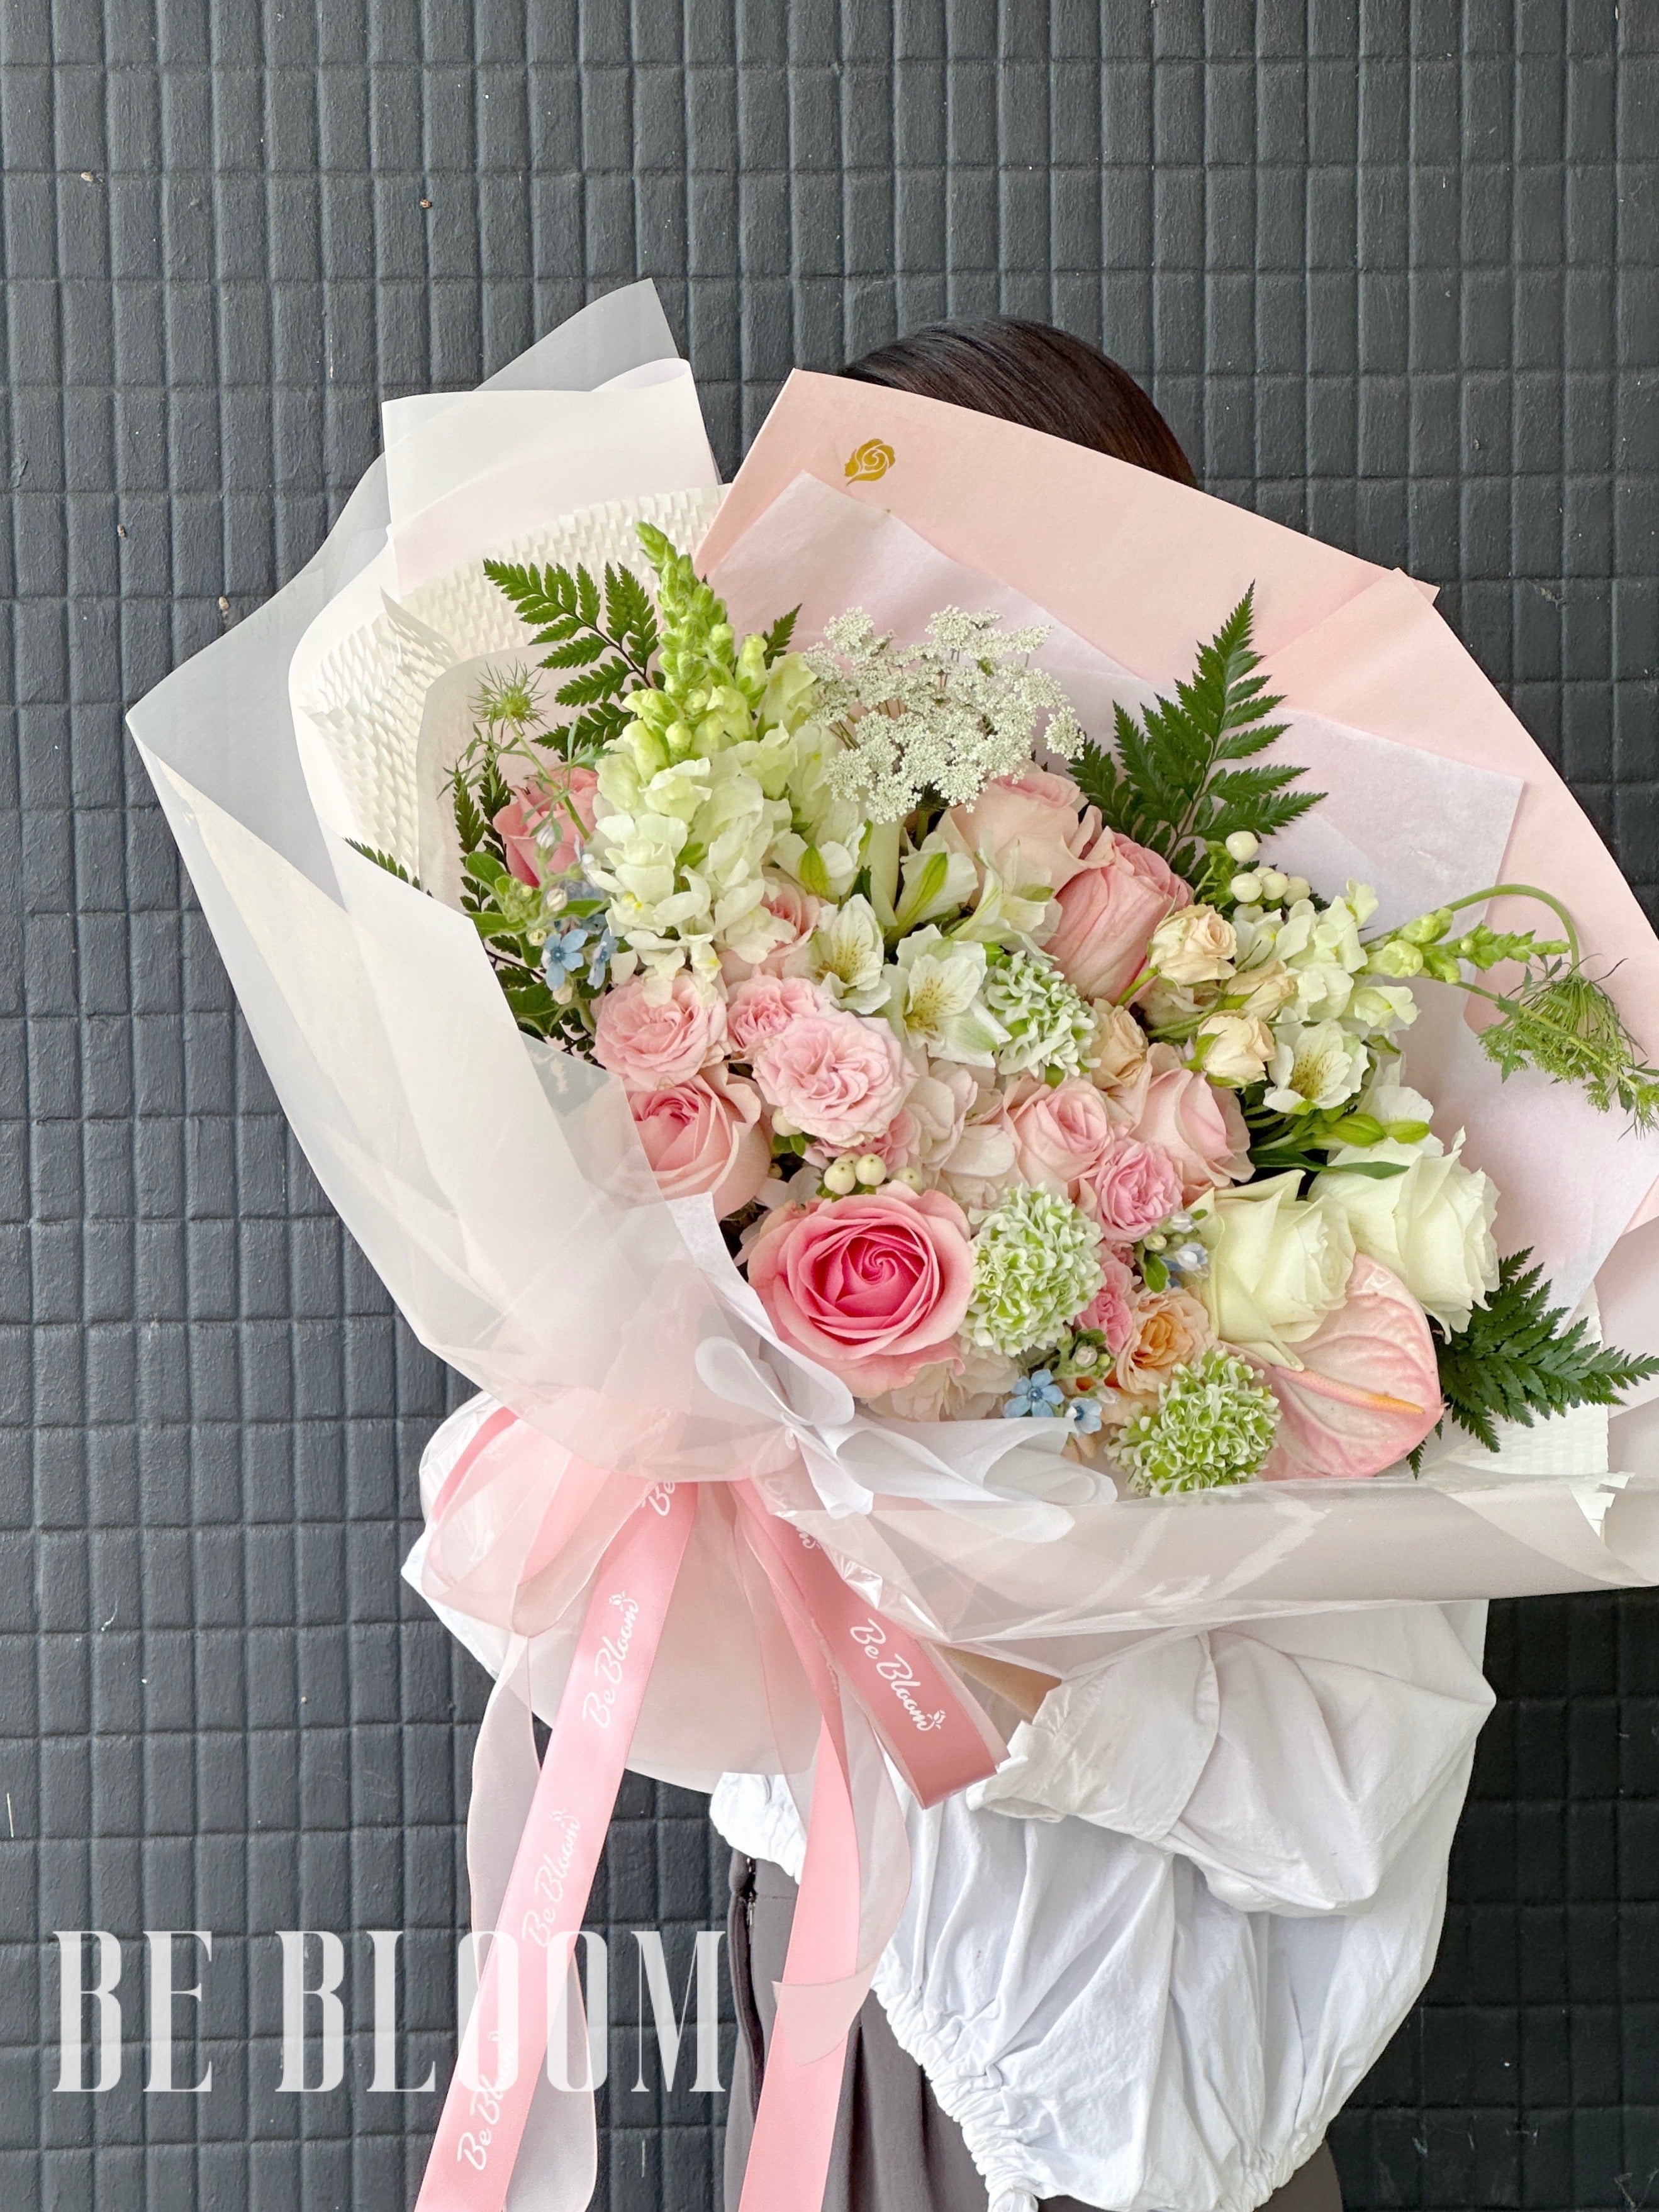 Sweetheart's Bouquet Bliss